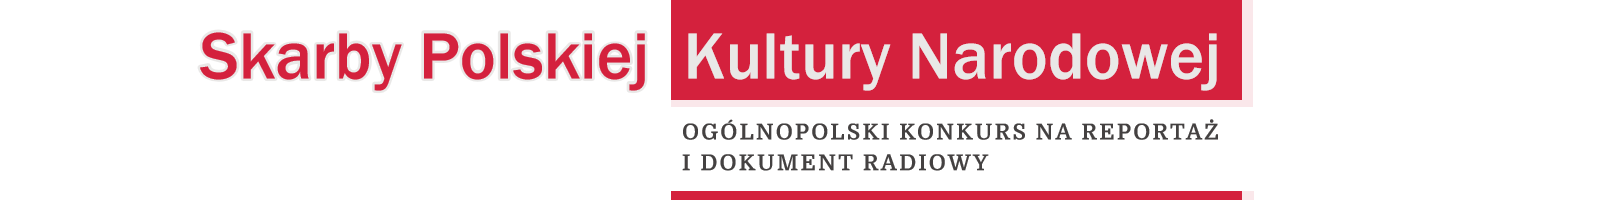 Skarby Polskiej Kultury Narodowej | Aktualności Radio Zachód - Lubuskie